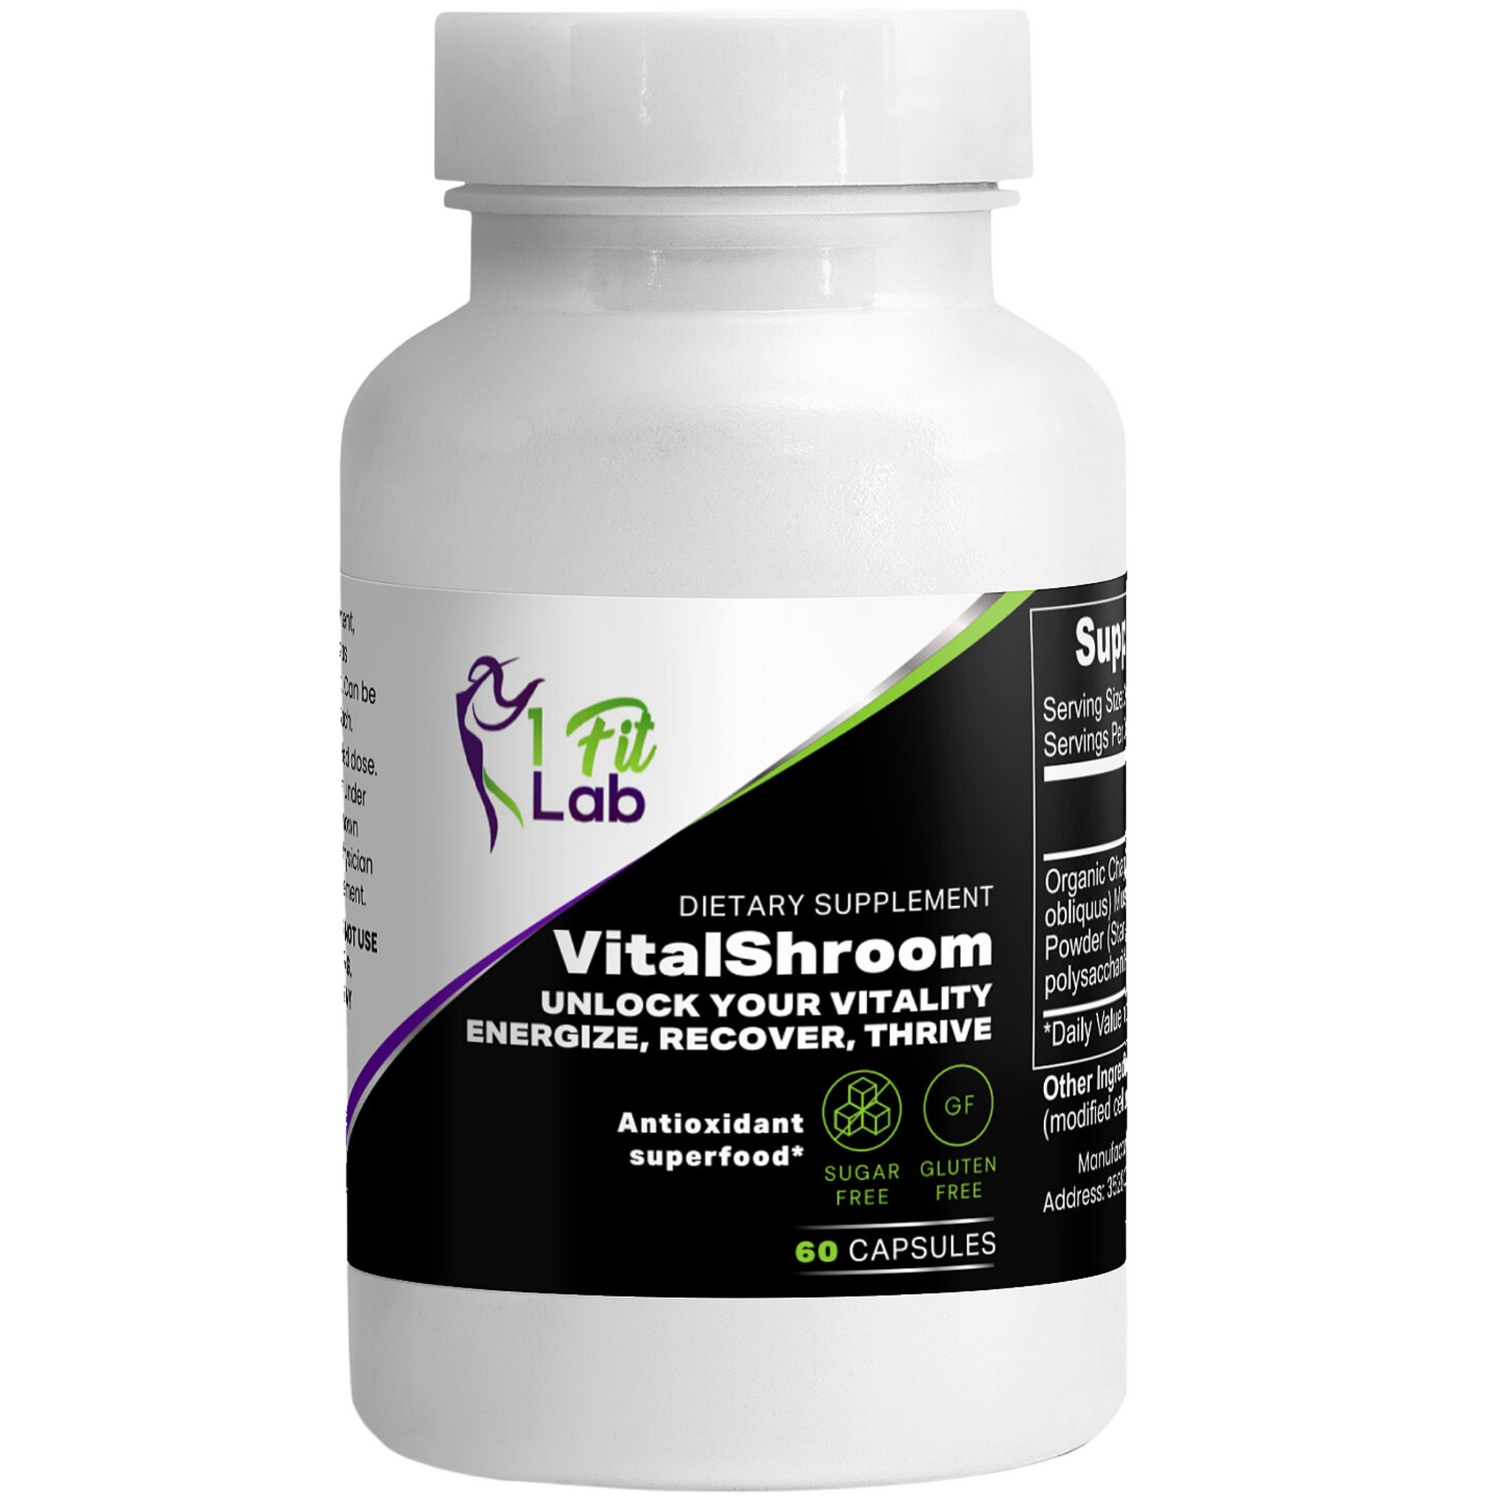 Bottle of VitalShroom Premium Chaga Mushroom Extract for enhanced immune support